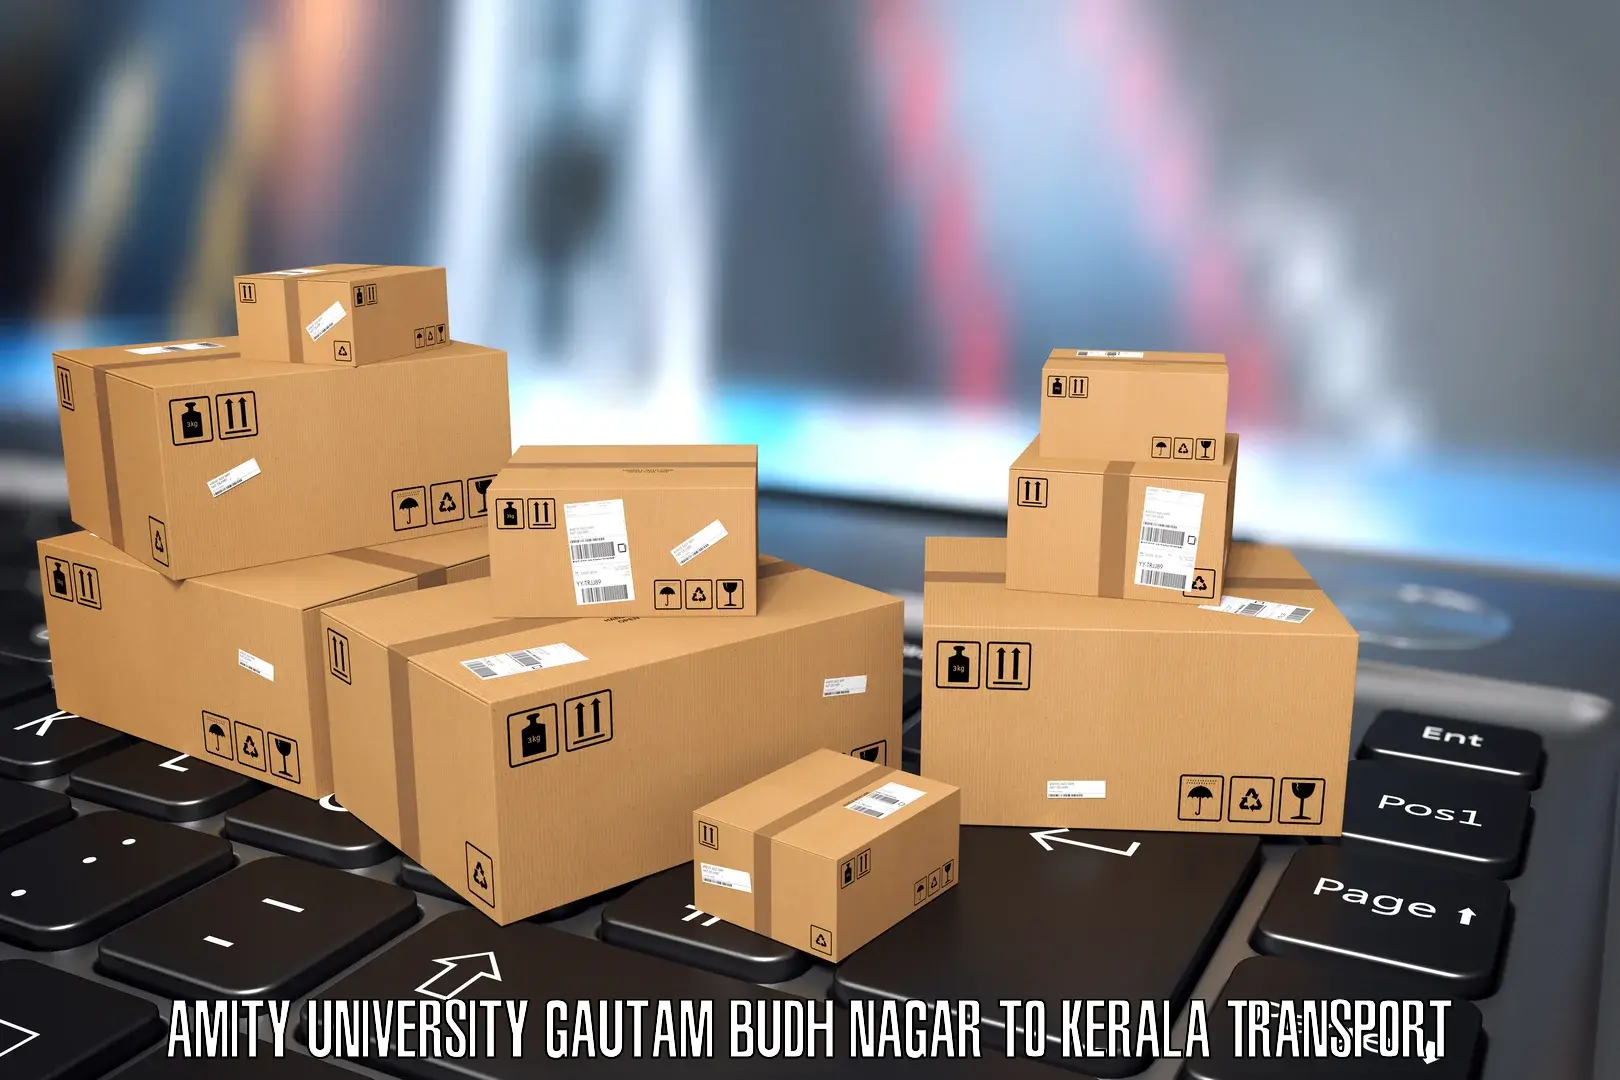 Scooty transport charges Amity University Gautam Budh Nagar to Karimba